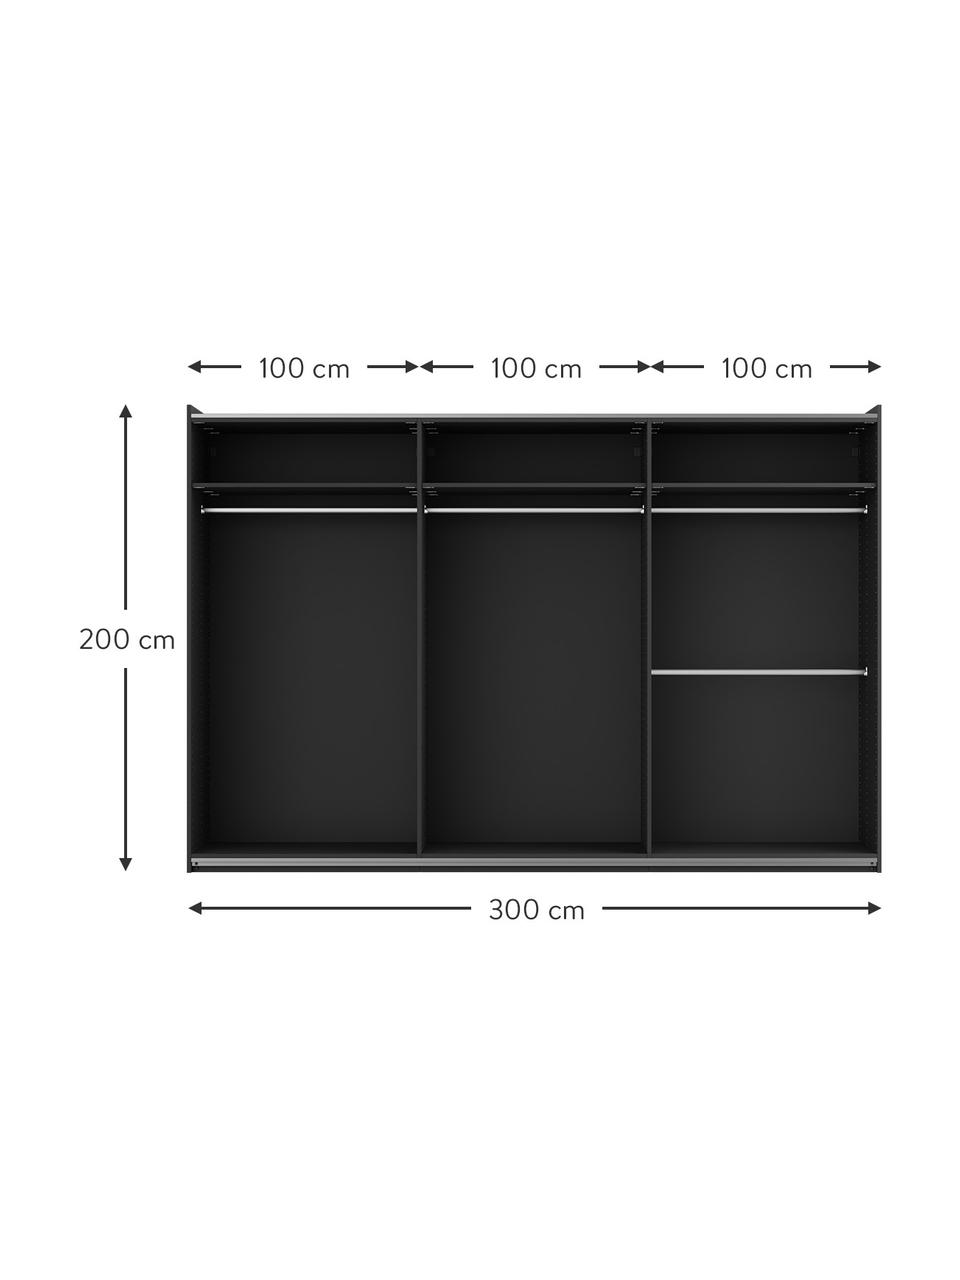 Szafa modułowa z drzwiami przesuwnymi Leon, 300 cm, różne warianty, Korpus: płyta wiórowa z certyfika, Czarny, S 300 x W 200 cm, Basic